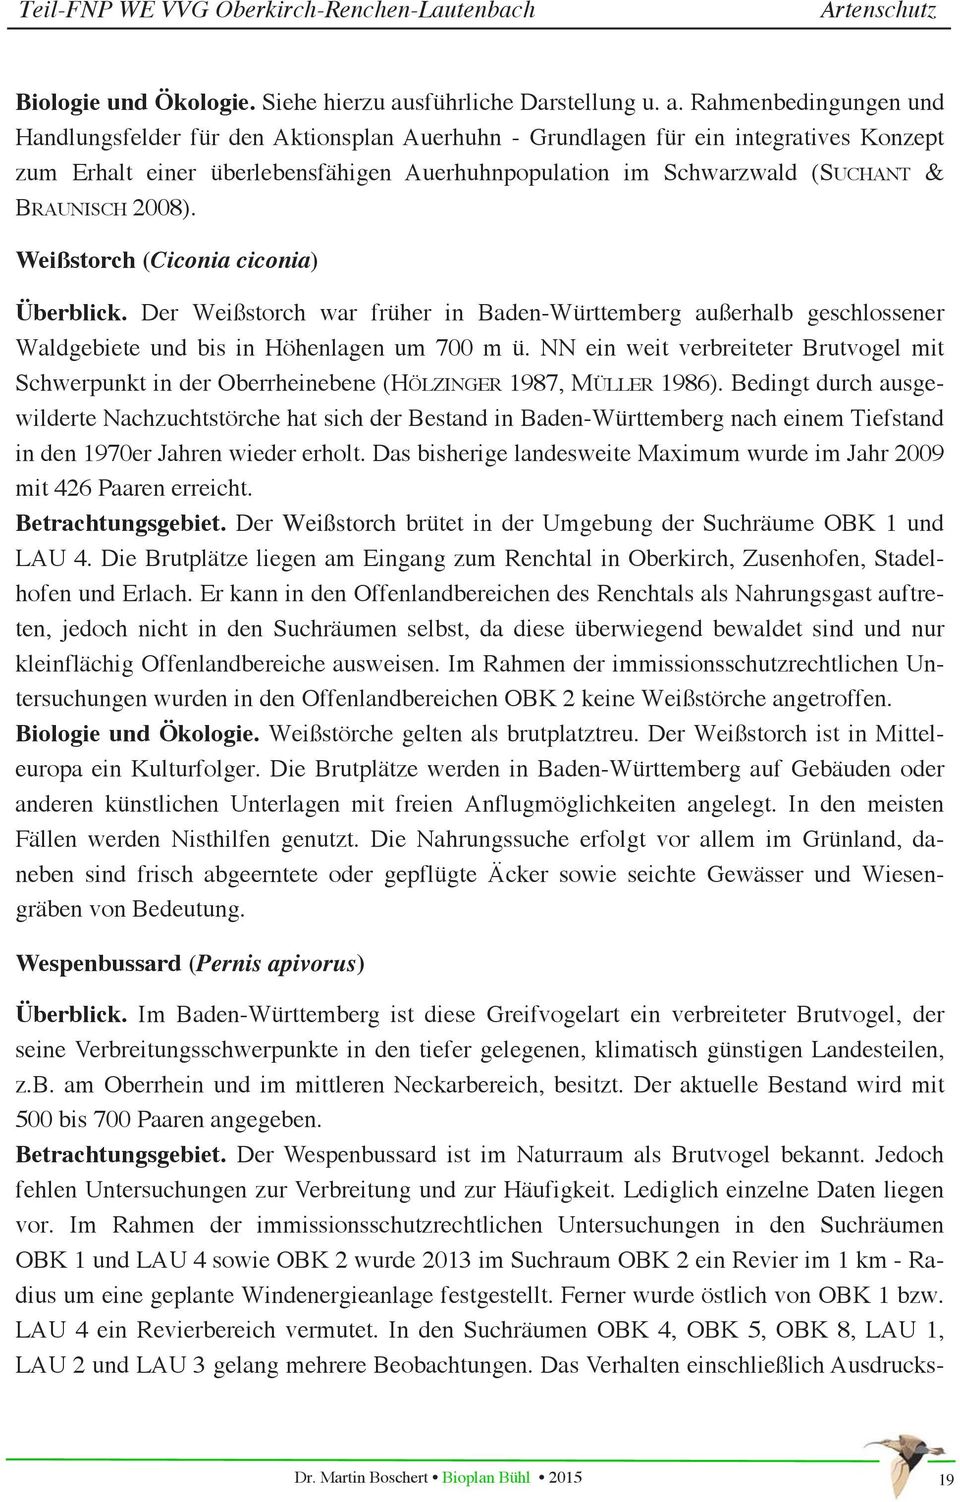 Rahmenbedingungen und Handlungsfelder für den Aktionsplan Auerhuhn - Grundlagen für ein integratives Konzept zum Erhalt einer überlebensfähigen Auerhuhnpopulation im Schwarzwald (SUCHANT & BRAUNISCH